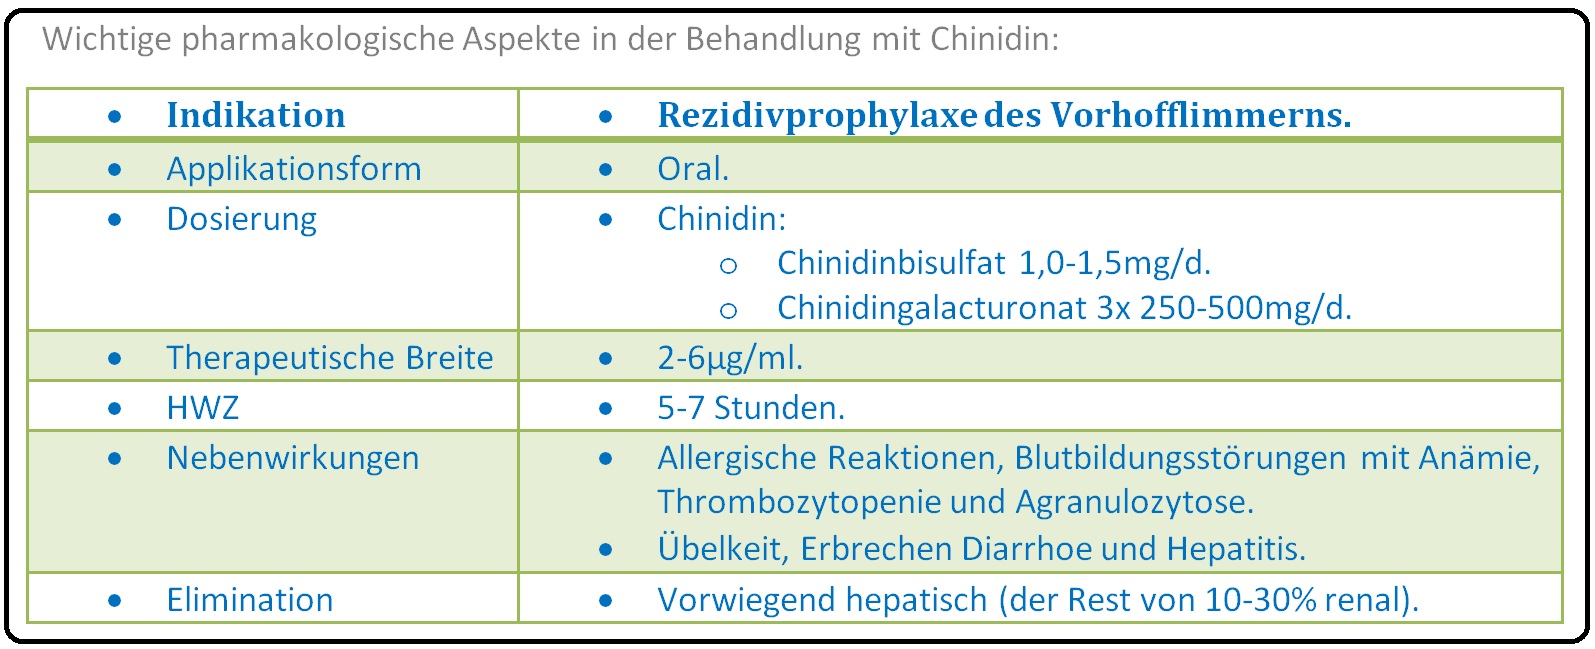 088 Wichtige pharmakologische Aspekte in der Behandlung mit Chinidin